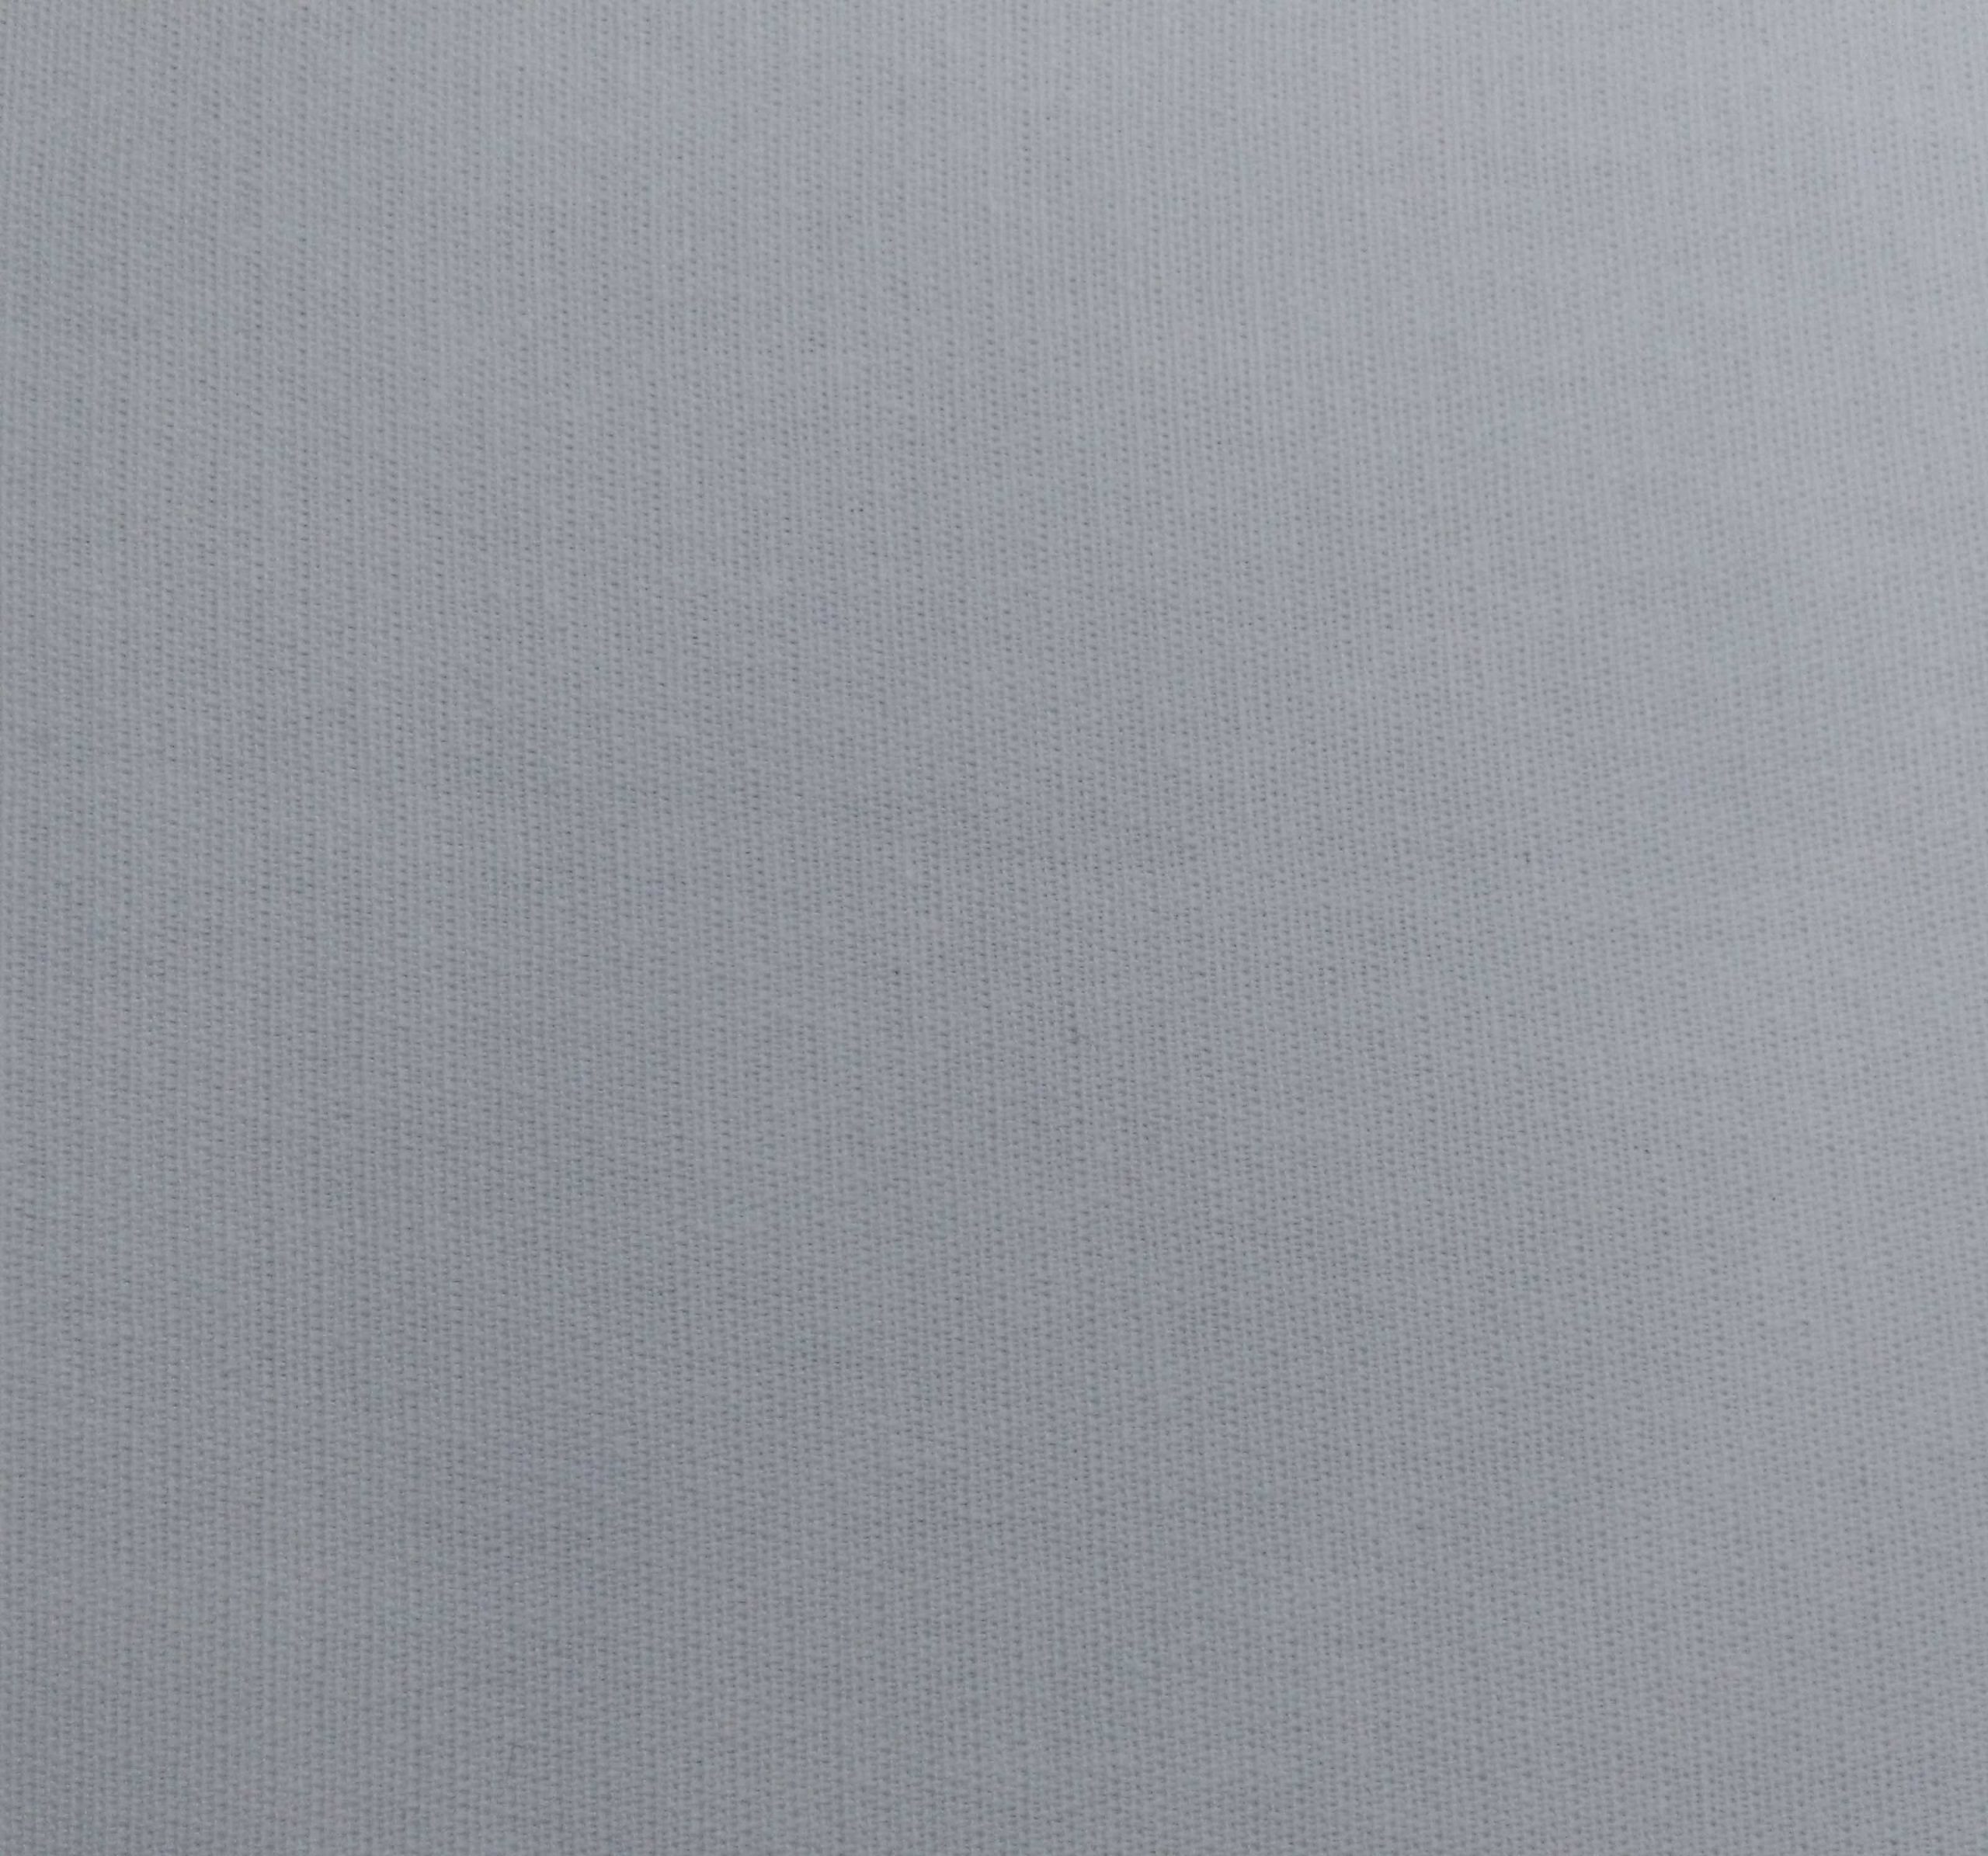 Ткань кирза отбеленная ш. 145 см, пл. 376 г/м2 ГОСТ 19196-93 высокого качества от компании ООО ФлёрТекс Иваново